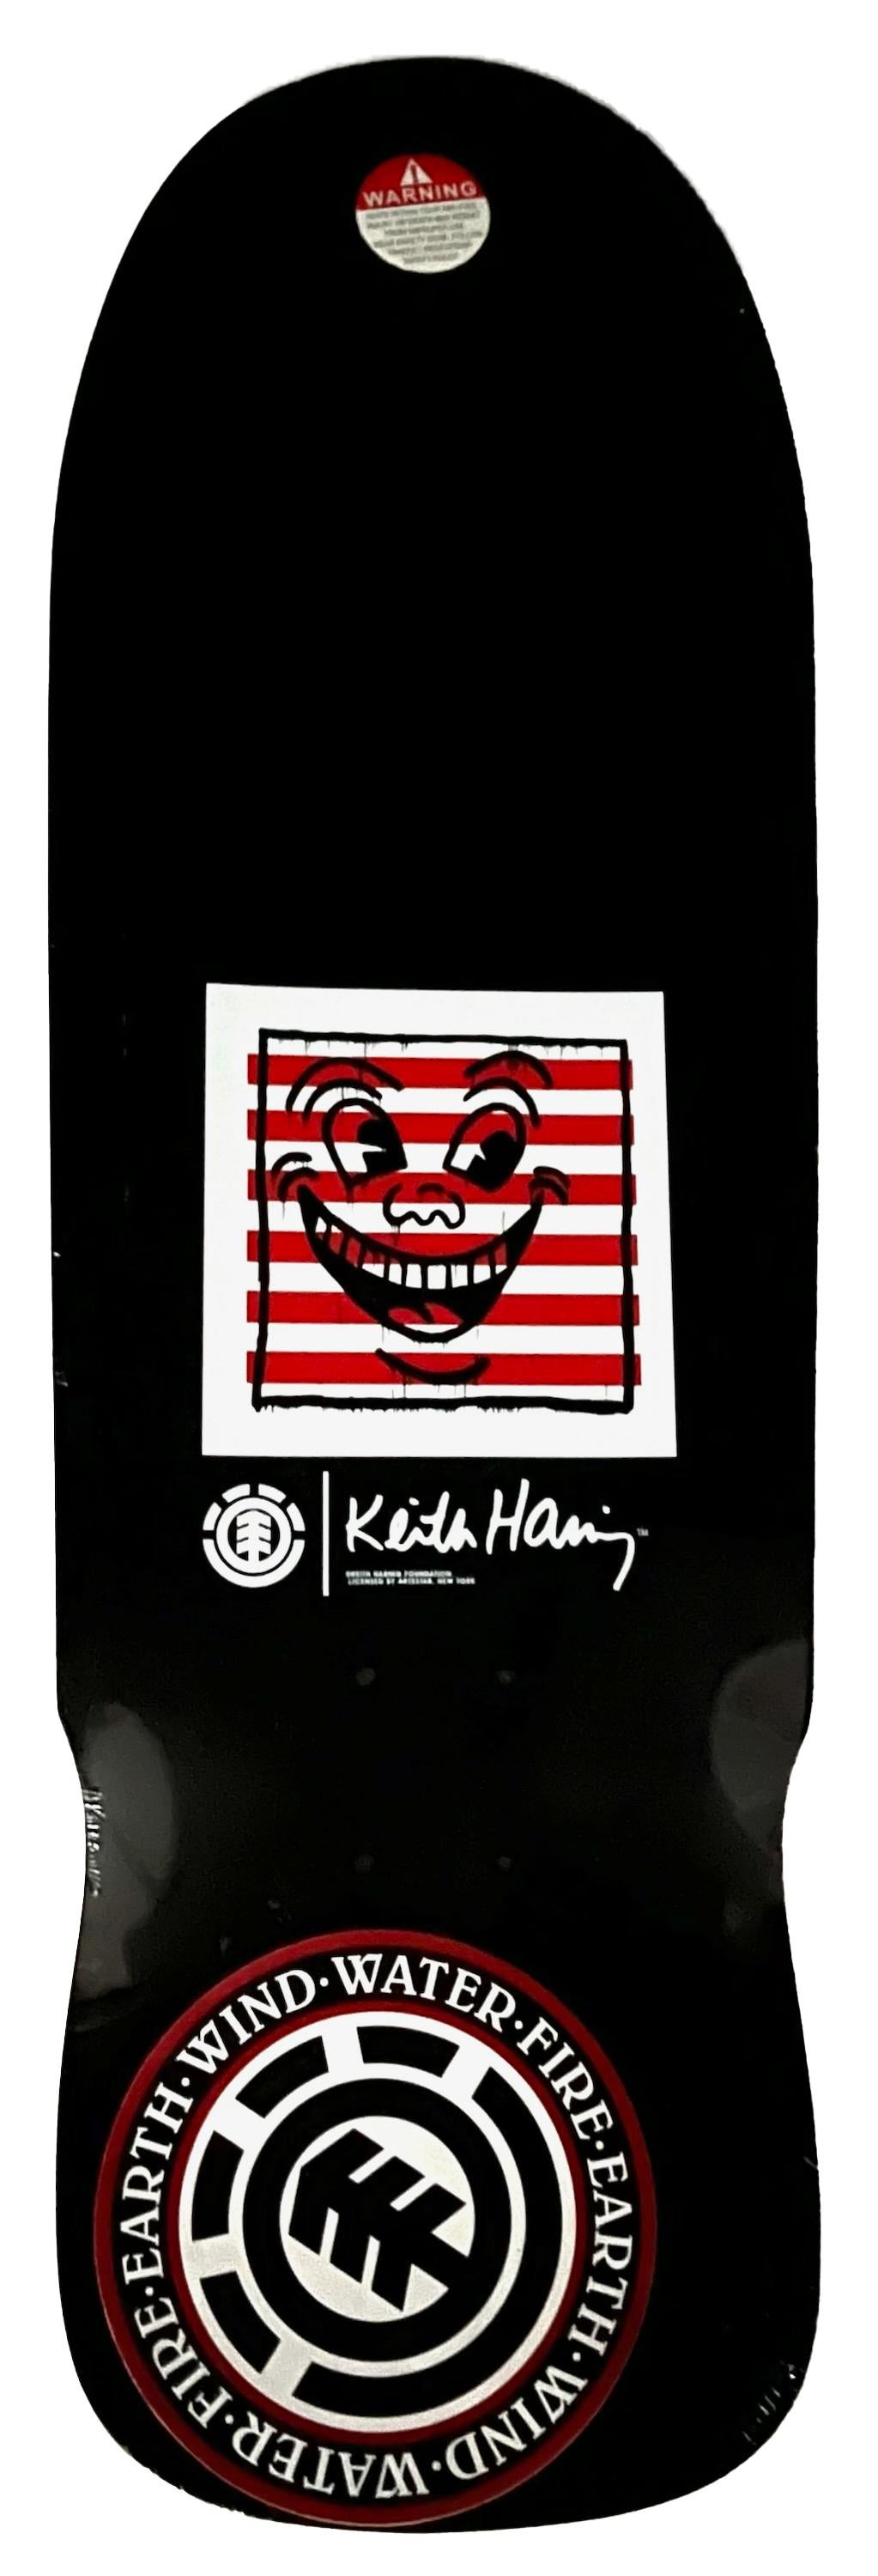 Keith Haring Skateboard Deck 2019:
Ausverkauft, limitierte Auflage des markenrechtlich geschützten Keith Haring Skateboard Decks mit den ikonischen Motiven des Künstlers. Dieses Werk ist das Ergebnis einer ausverkauften Collaboration zwischen